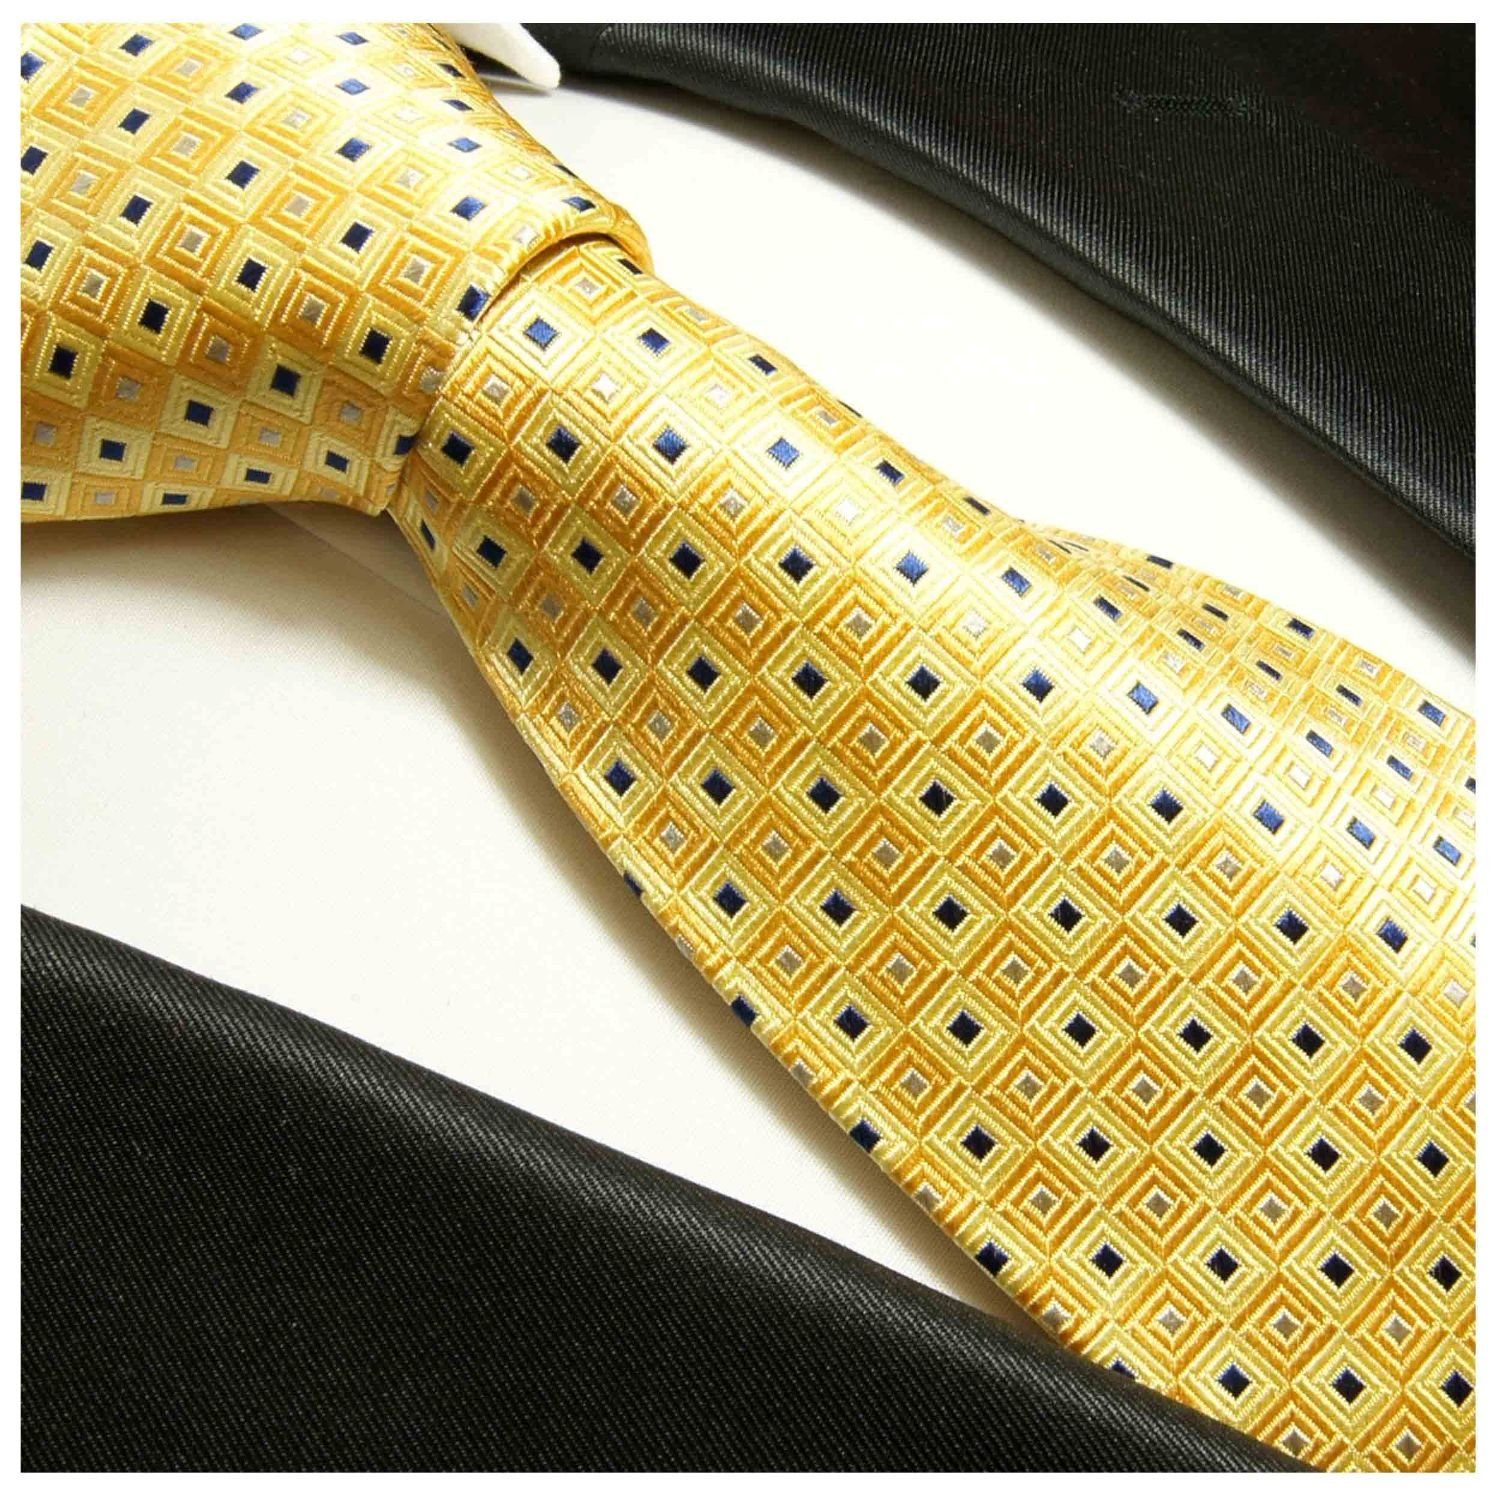 Paul Designer Herren 689 Seide gold gepunktet Seidenkrawatte gelb (6cm), Krawatte Schlips Malone 100% Schmal modern